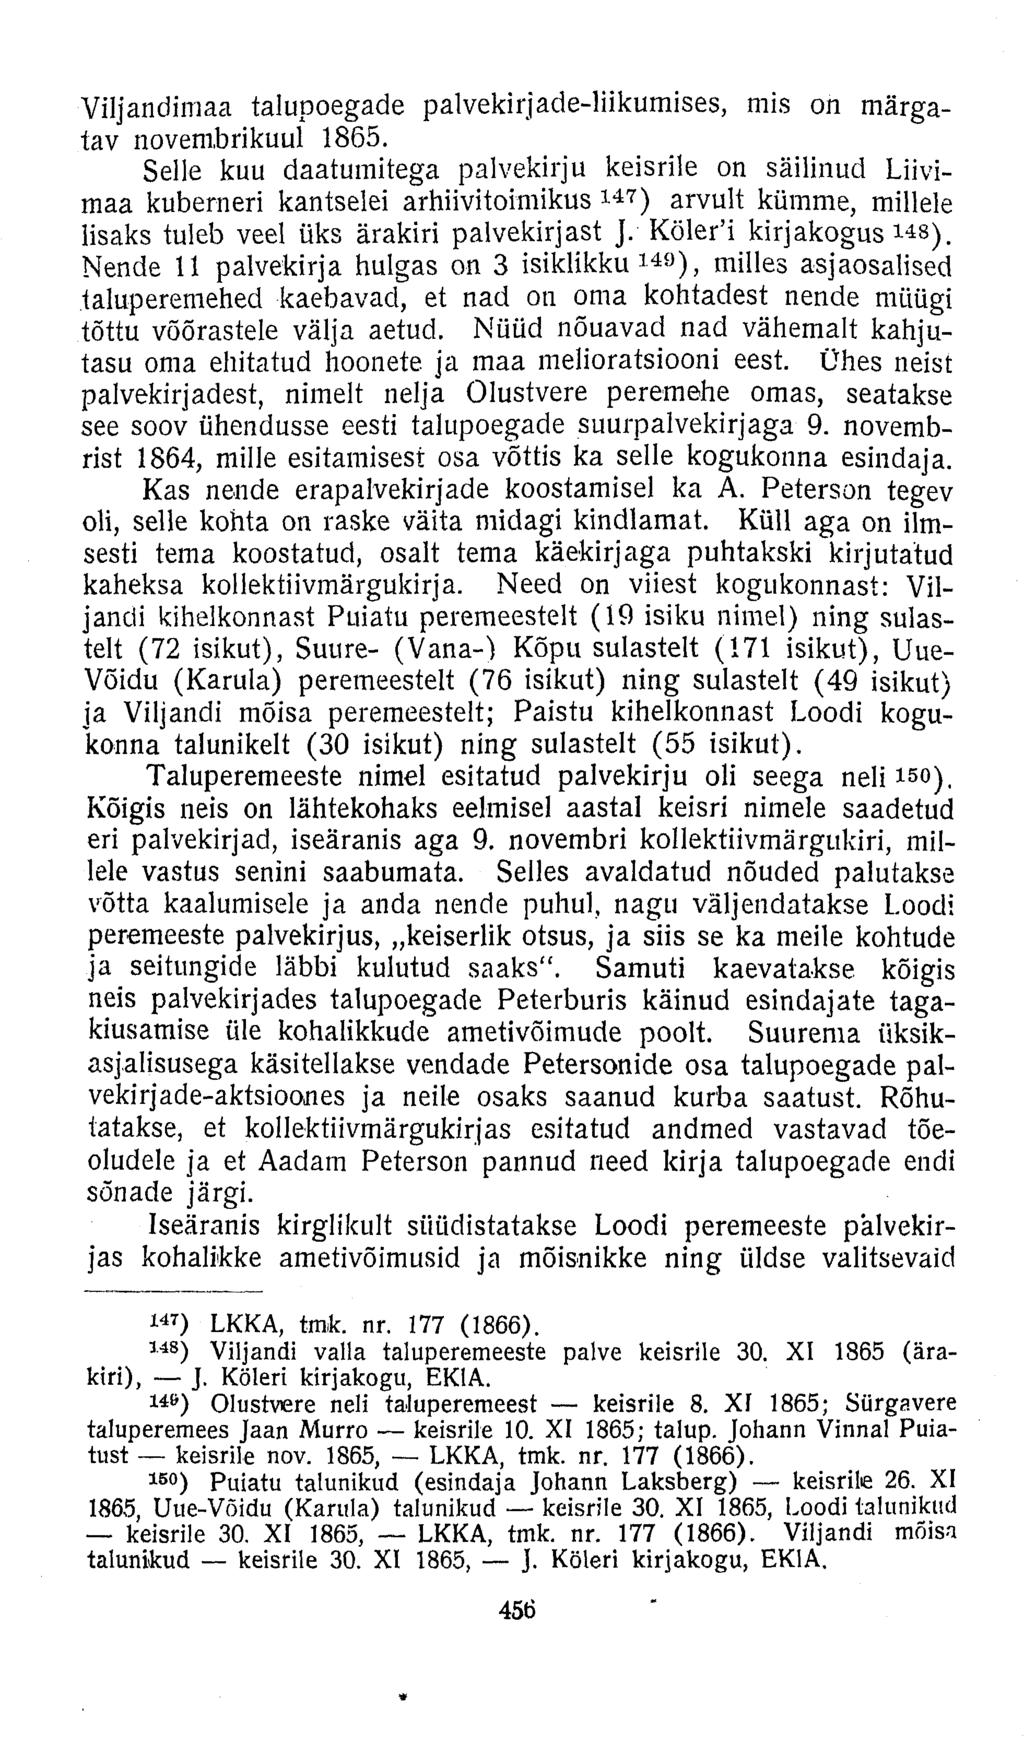 Viljandimaa talupoegade palvekirjade-liikumises, mis on märgatav novembrikuul 1865.